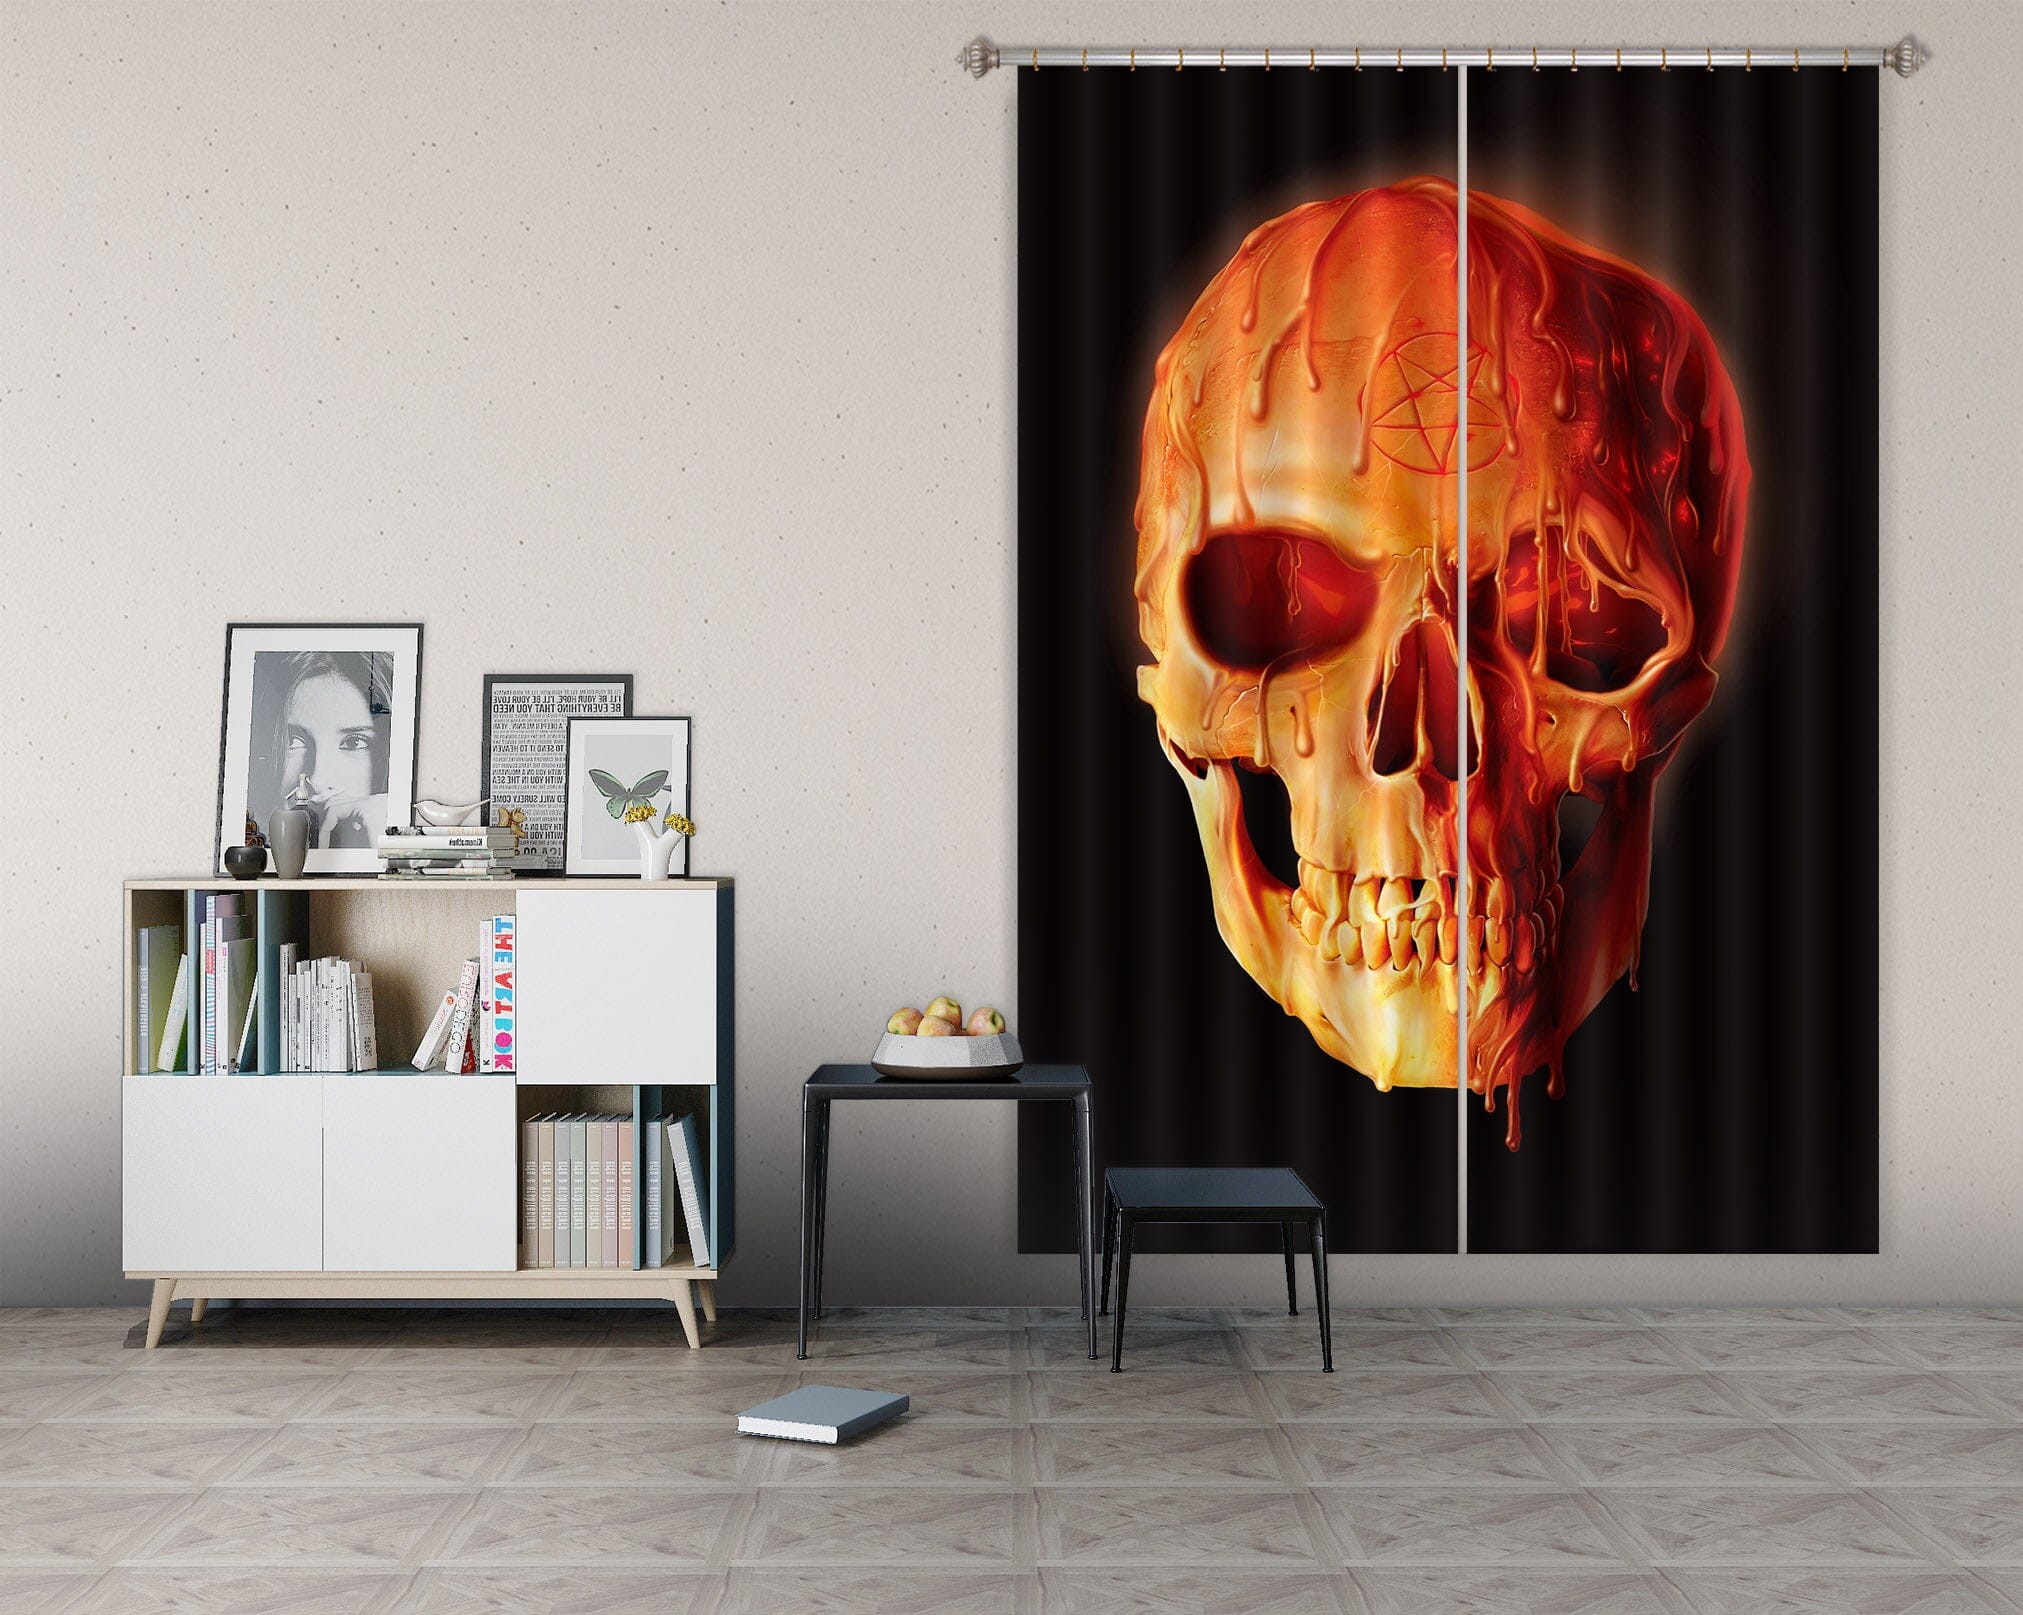 3D Wax Skull 091 Vincent Hie Curtain Curtains Drapes Curtains AJ Creativity Home 